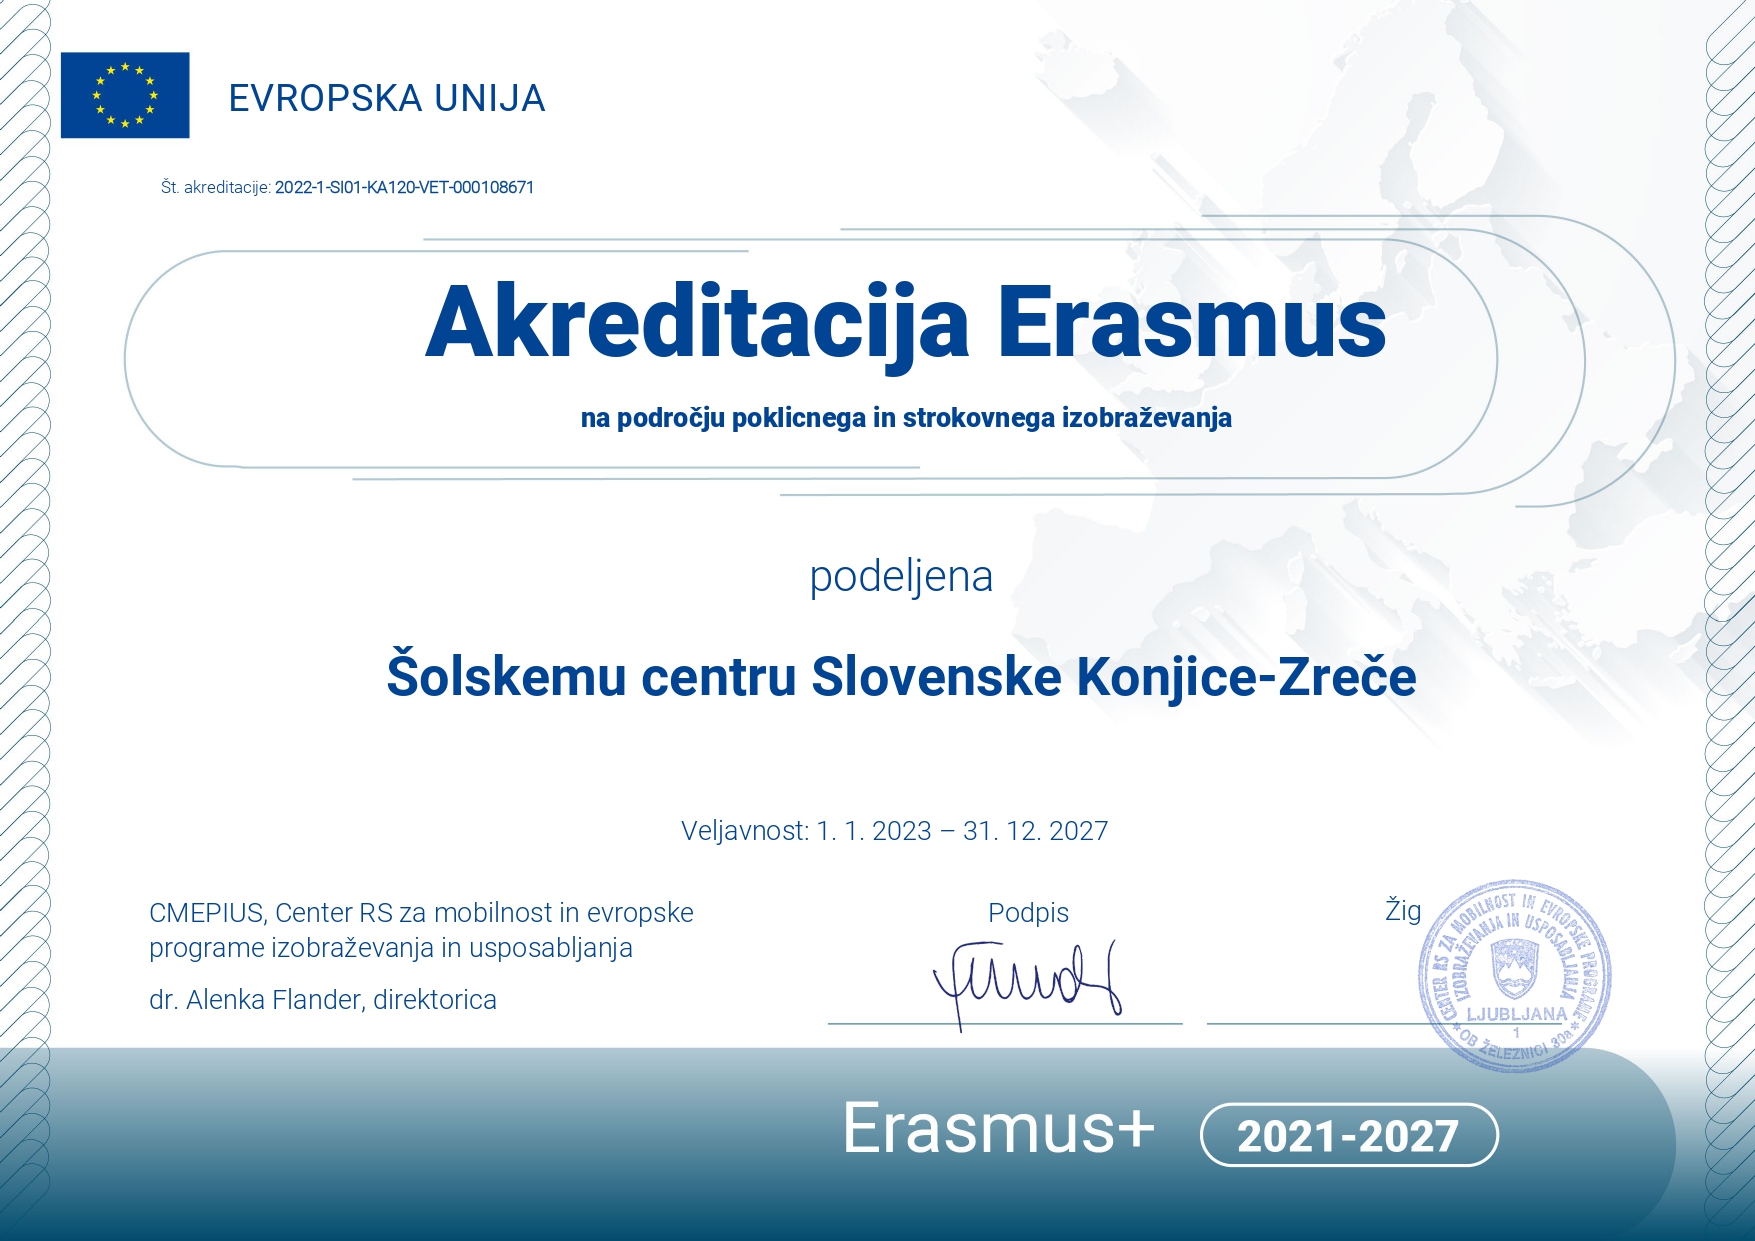 Erasmus+ akreditacija na področju poklicnega in strokovnega izobraževanja